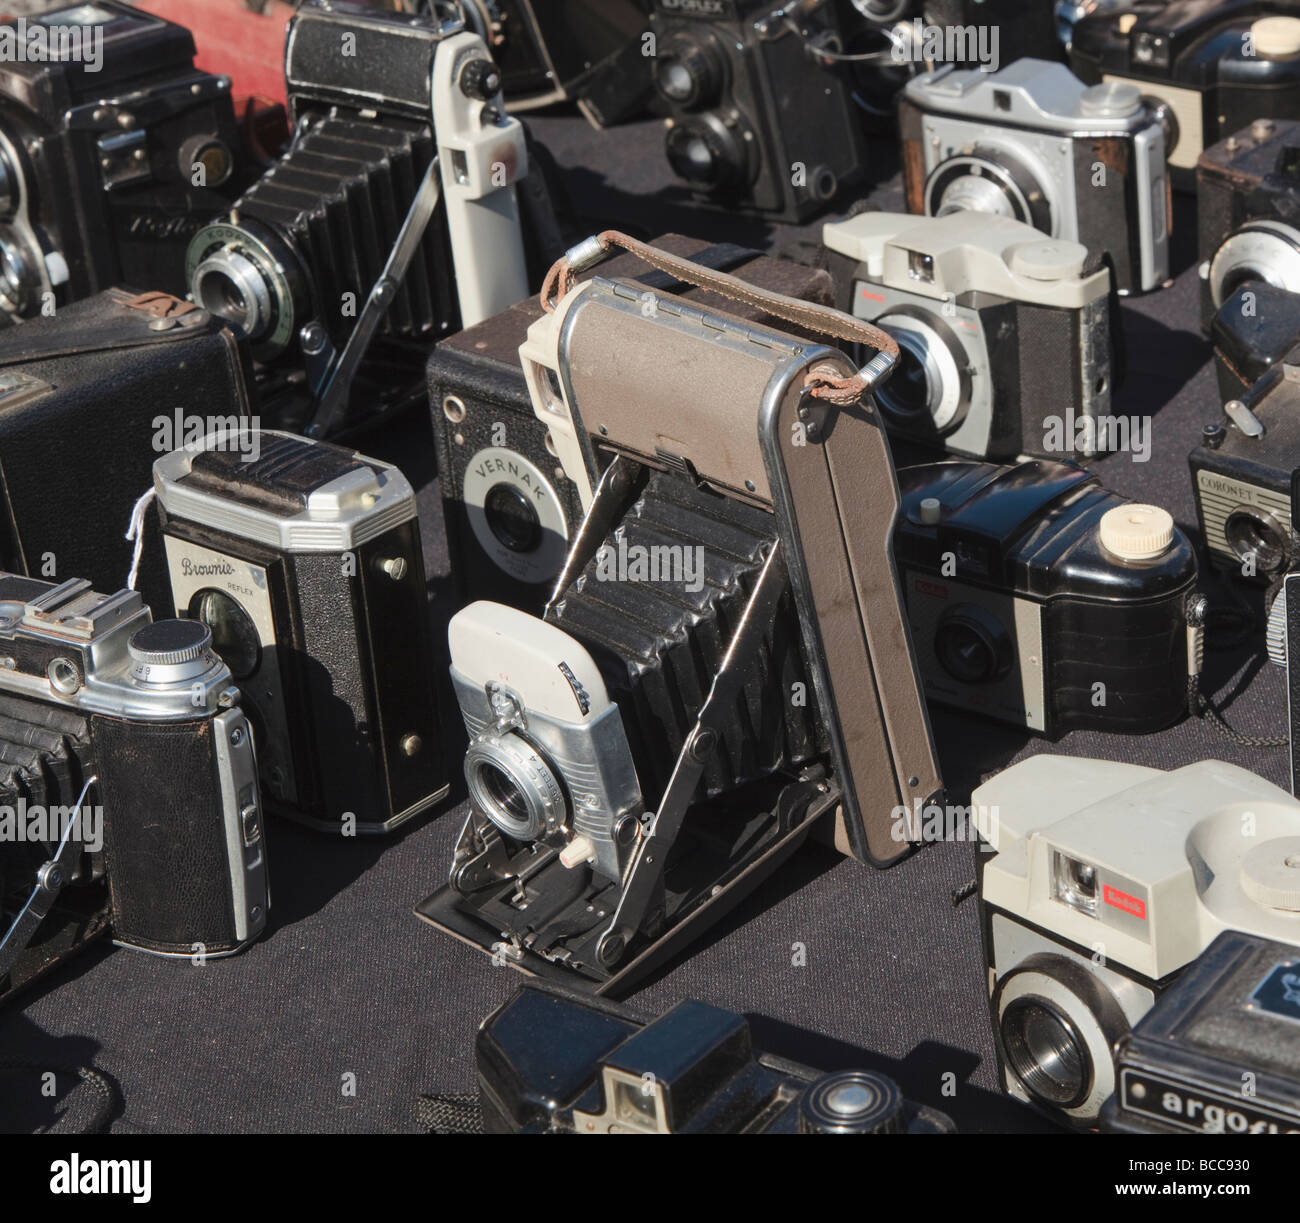 Sélection d'appareils photo de collection à une vente d'amorçage Banque D'Images